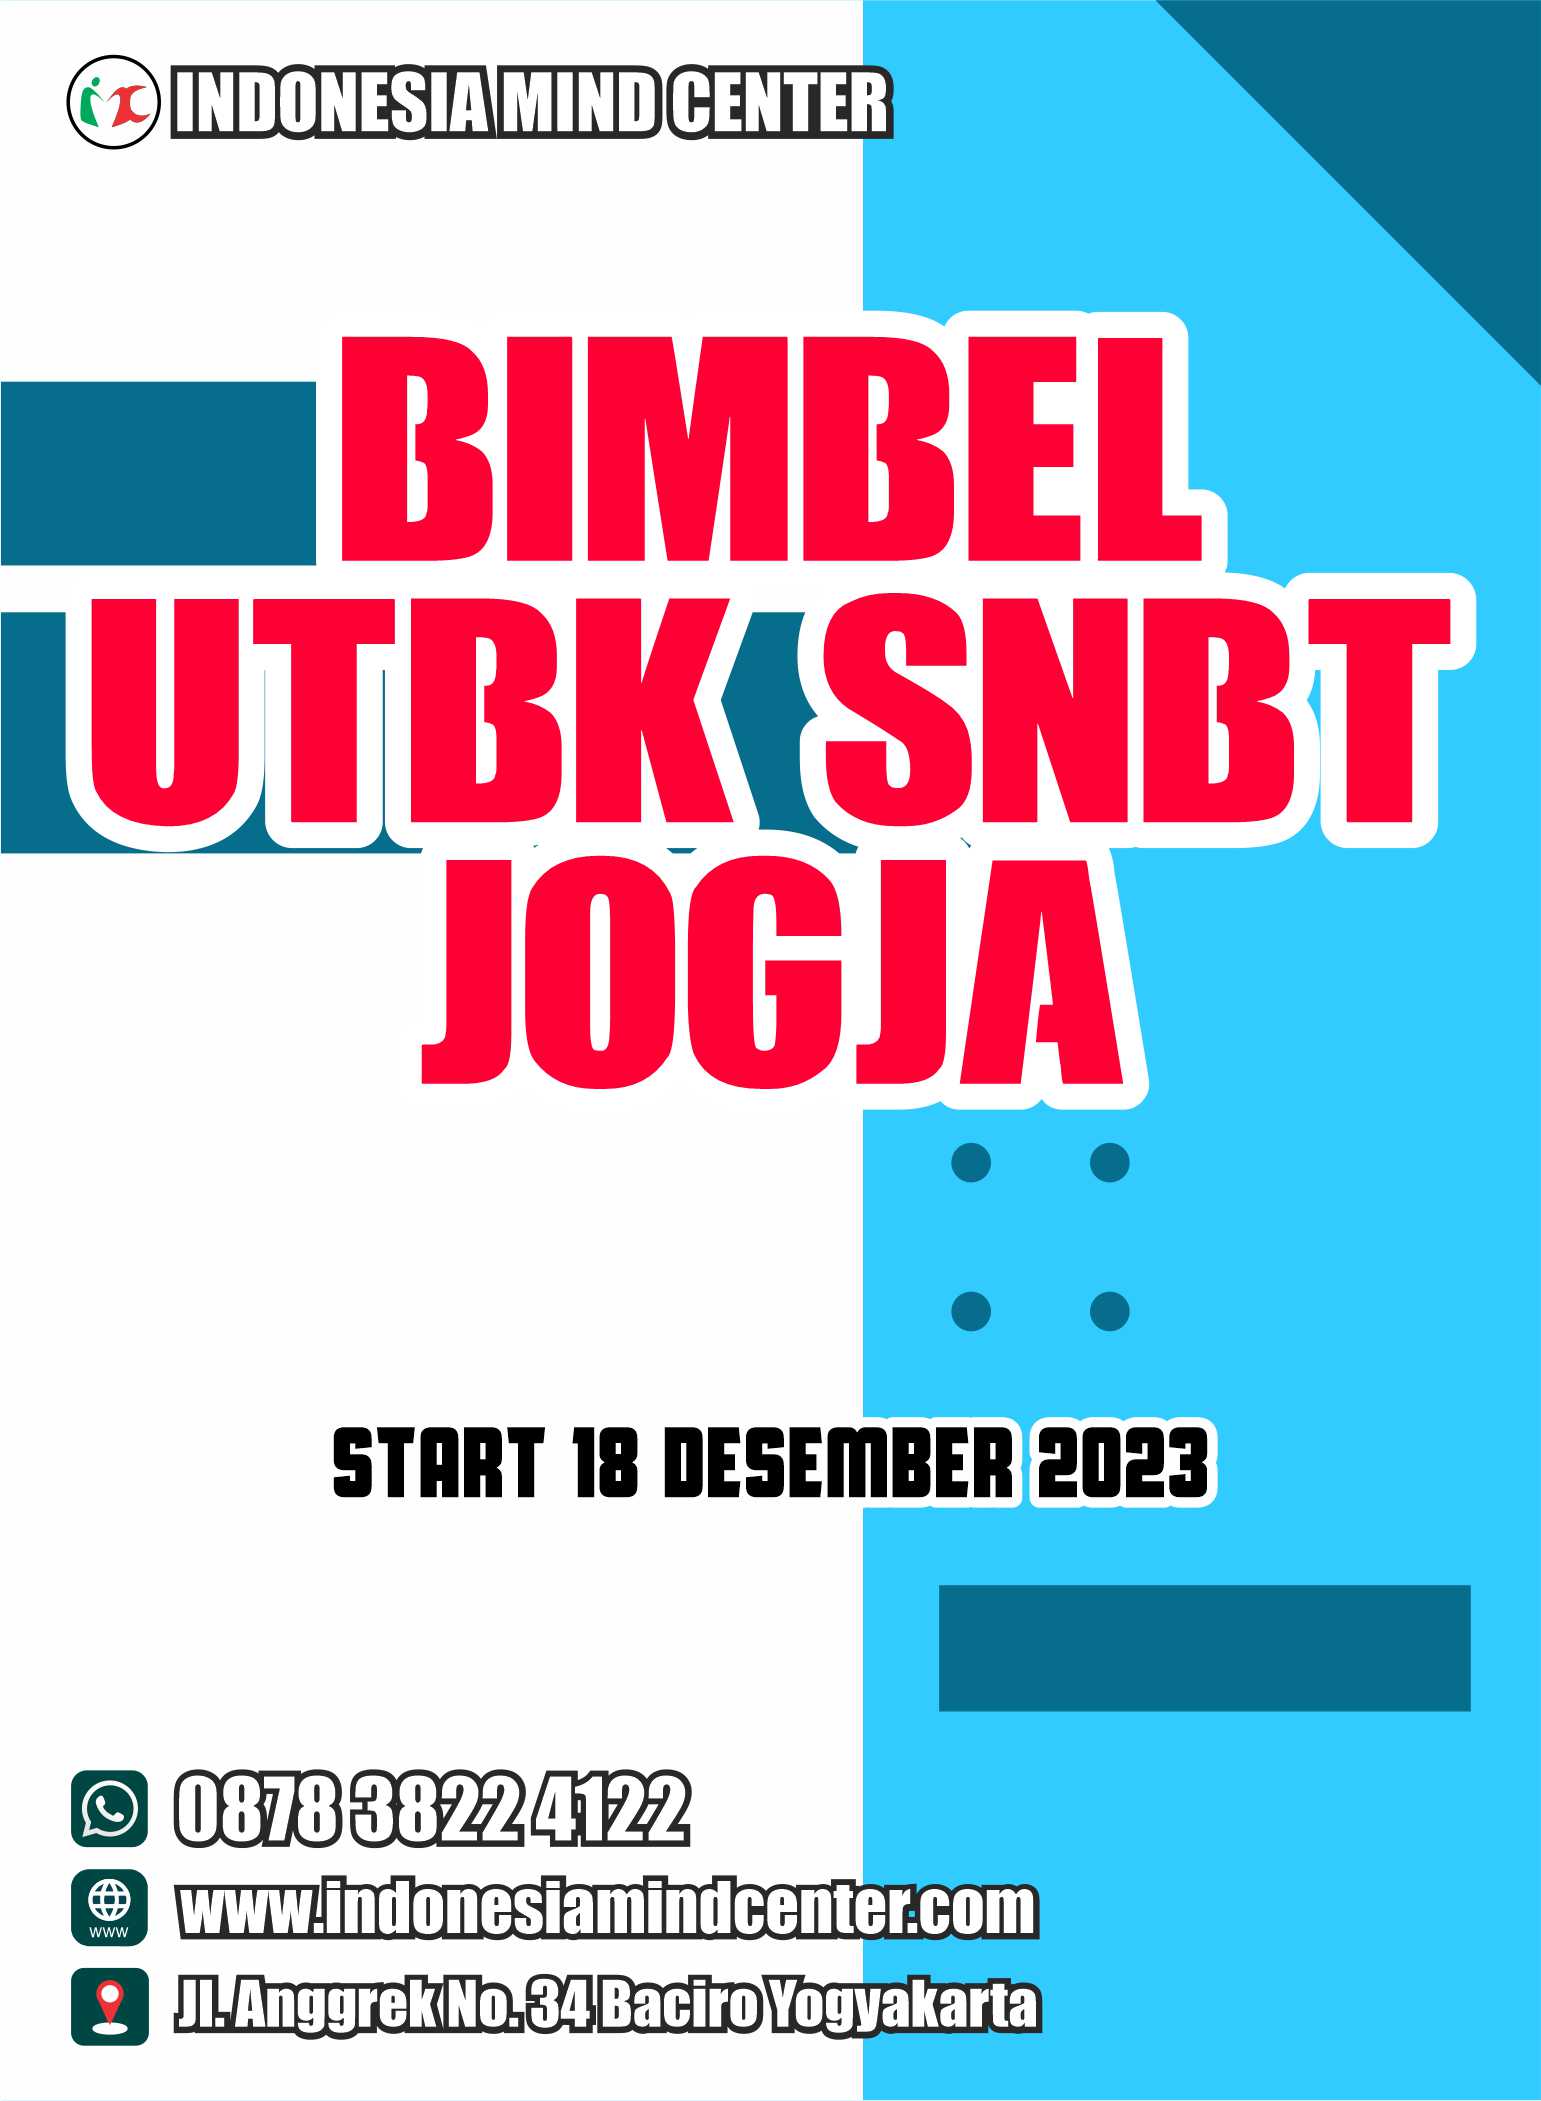 BIMBEL UTBK SNBT JOGJA START 18 DESEMBER 2023